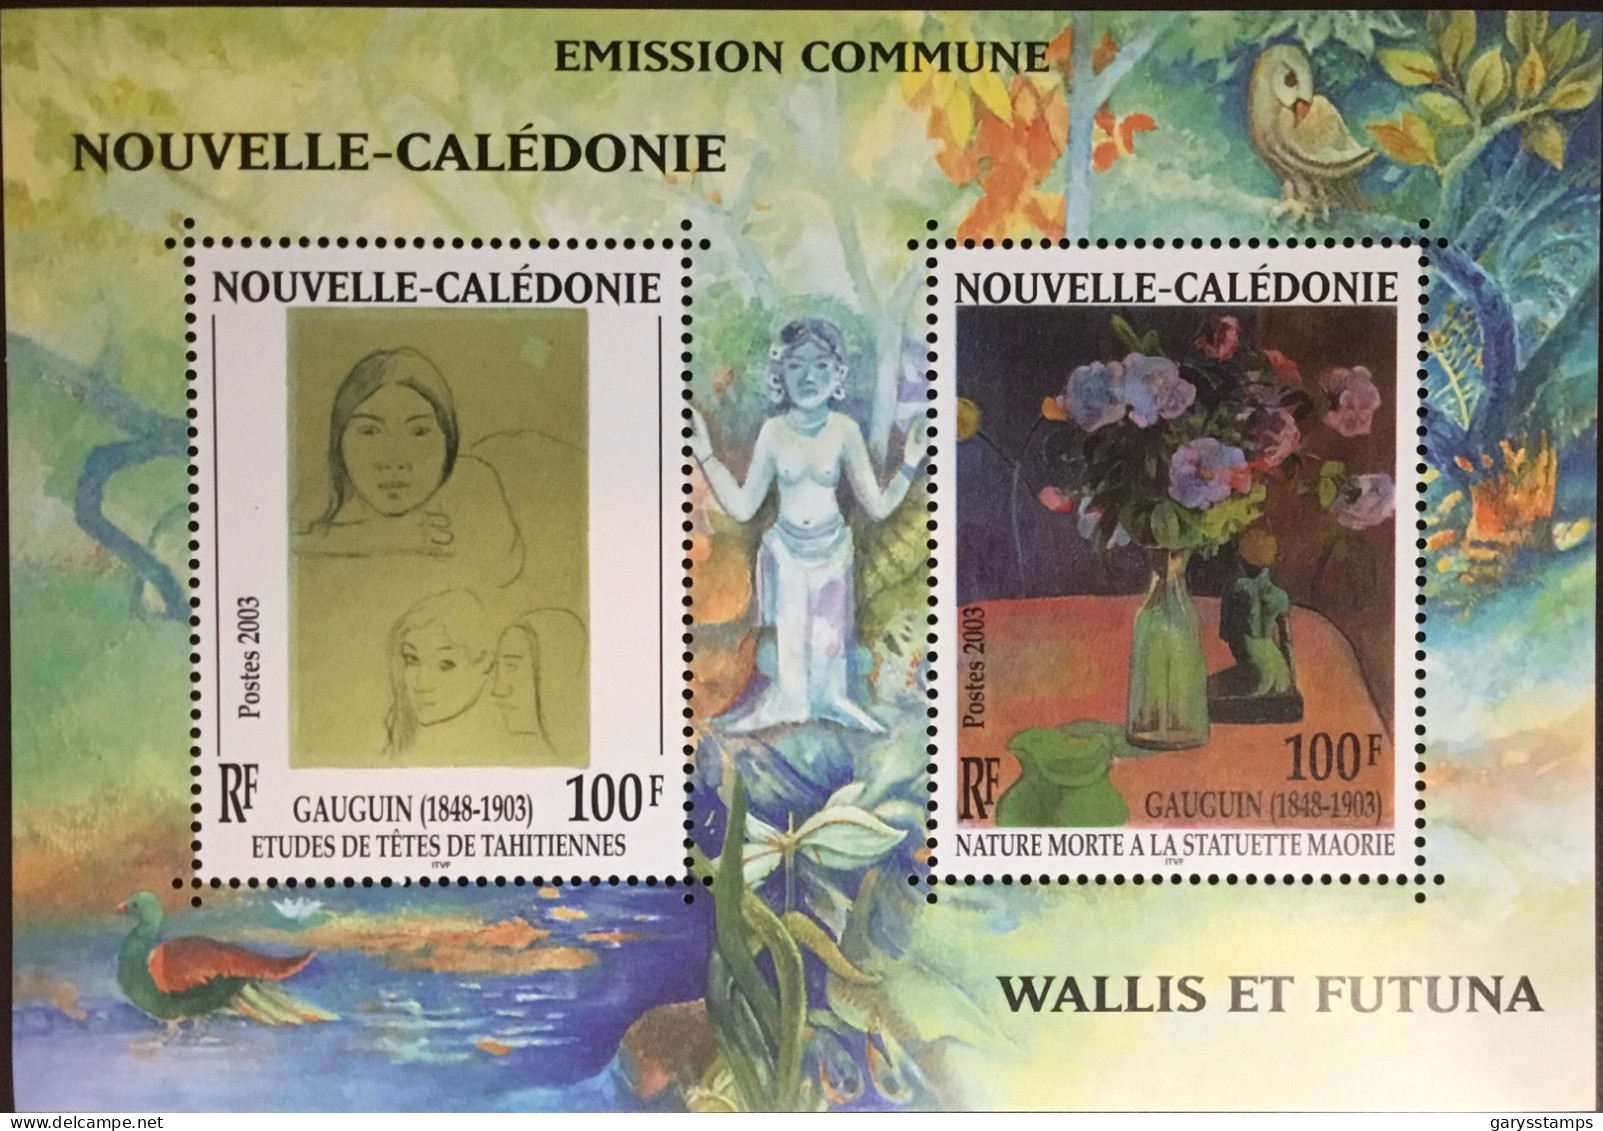 New Caledonia Caledonie 2003 Gauguin Centenary Joint Issue Minisheet MNH - Ungebraucht